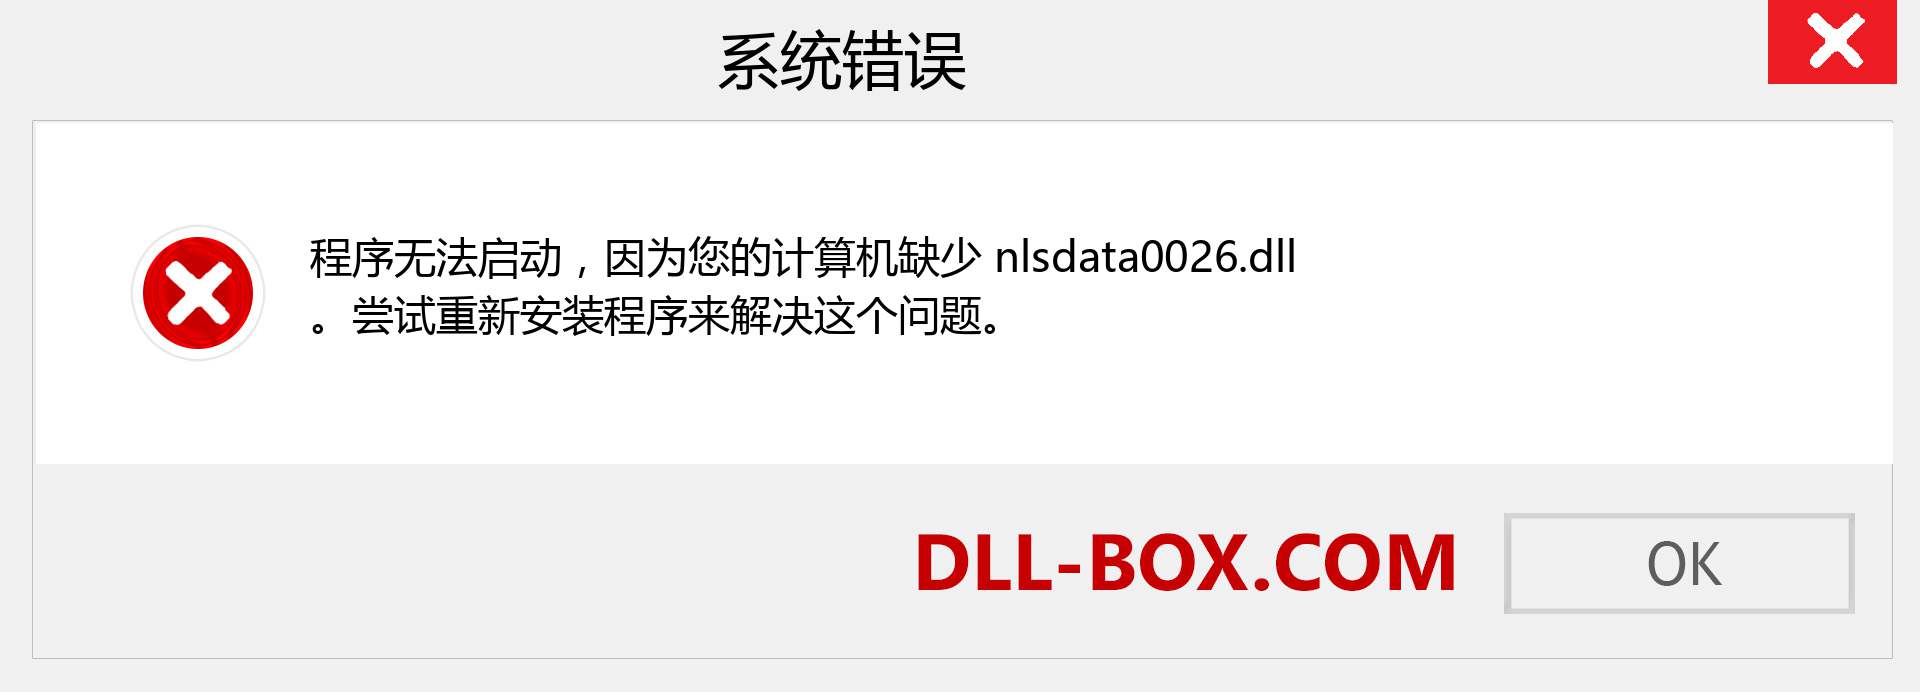 nlsdata0026.dll 文件丢失？。 适用于 Windows 7、8、10 的下载 - 修复 Windows、照片、图像上的 nlsdata0026 dll 丢失错误